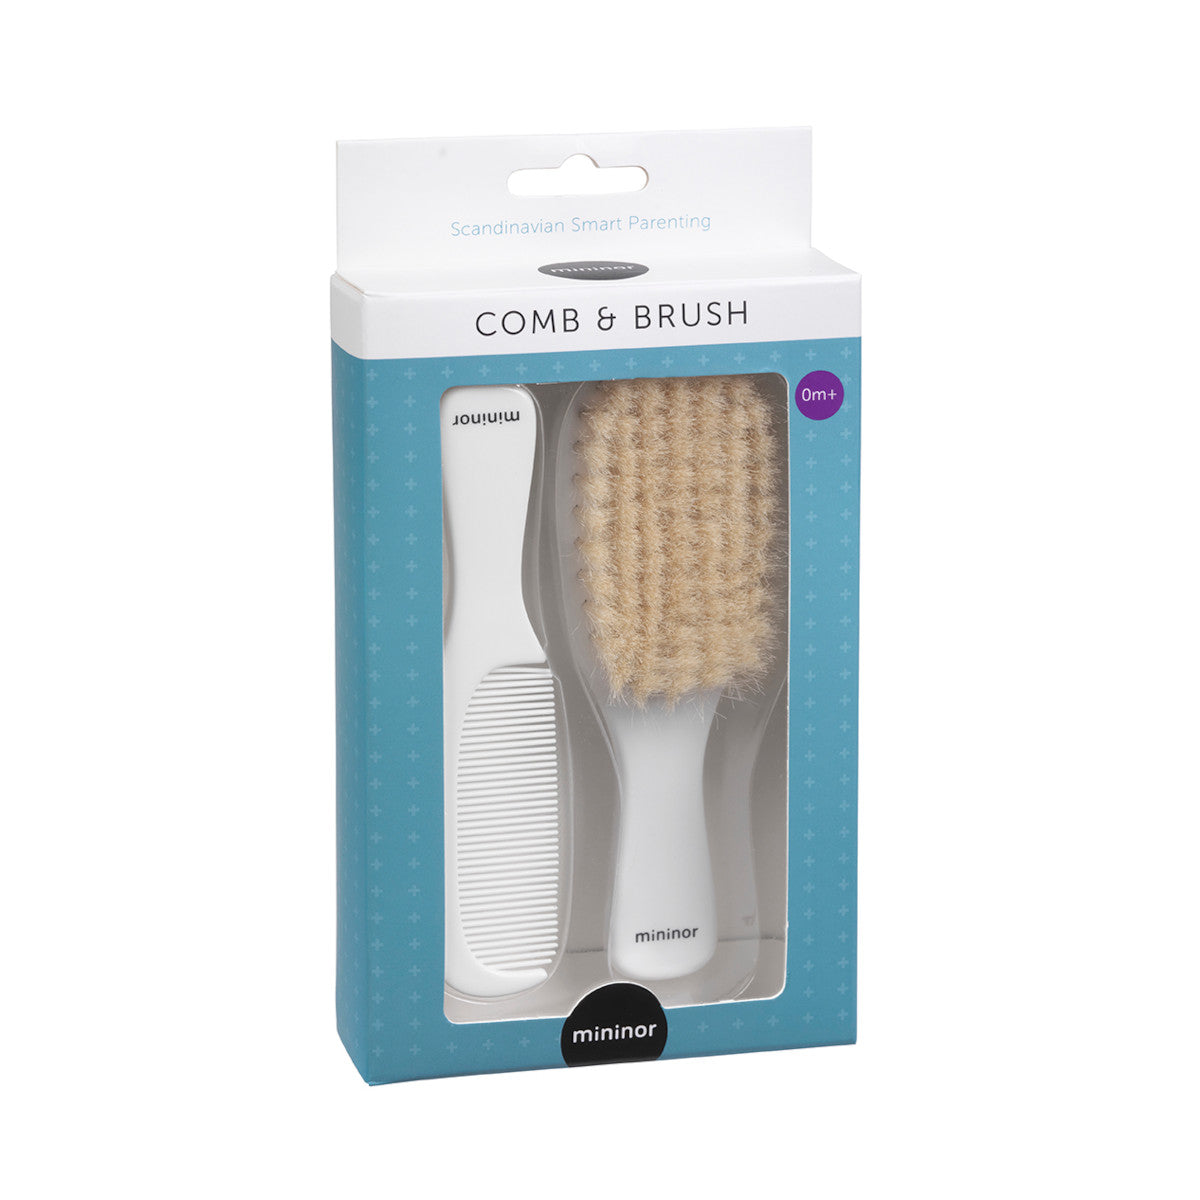 Mininor Comb and Brush Set